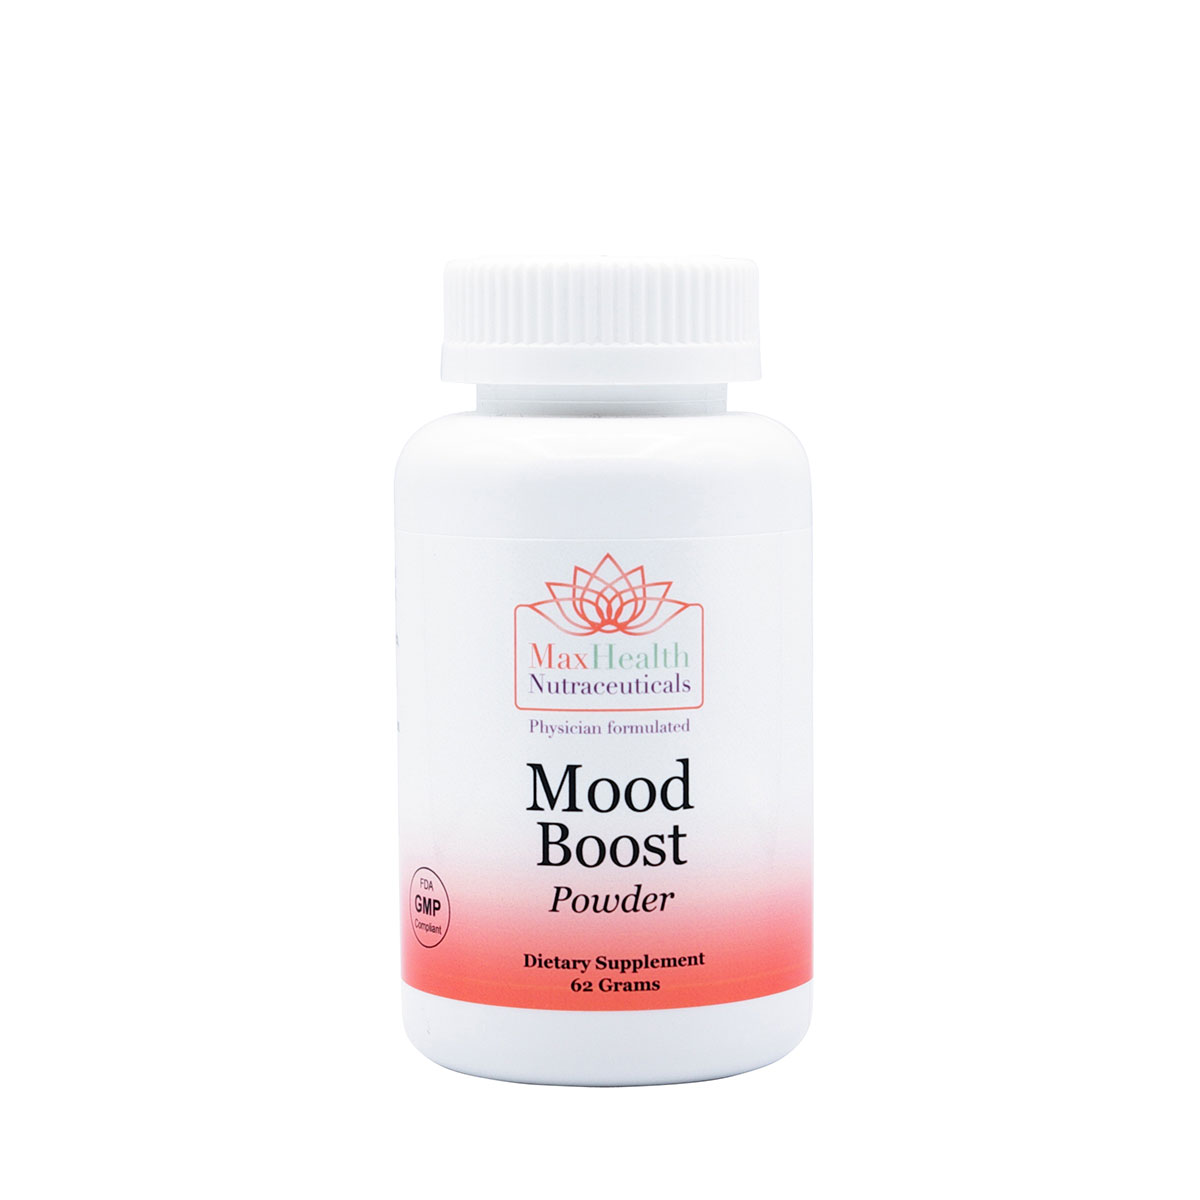 Mood Boost (Powder)